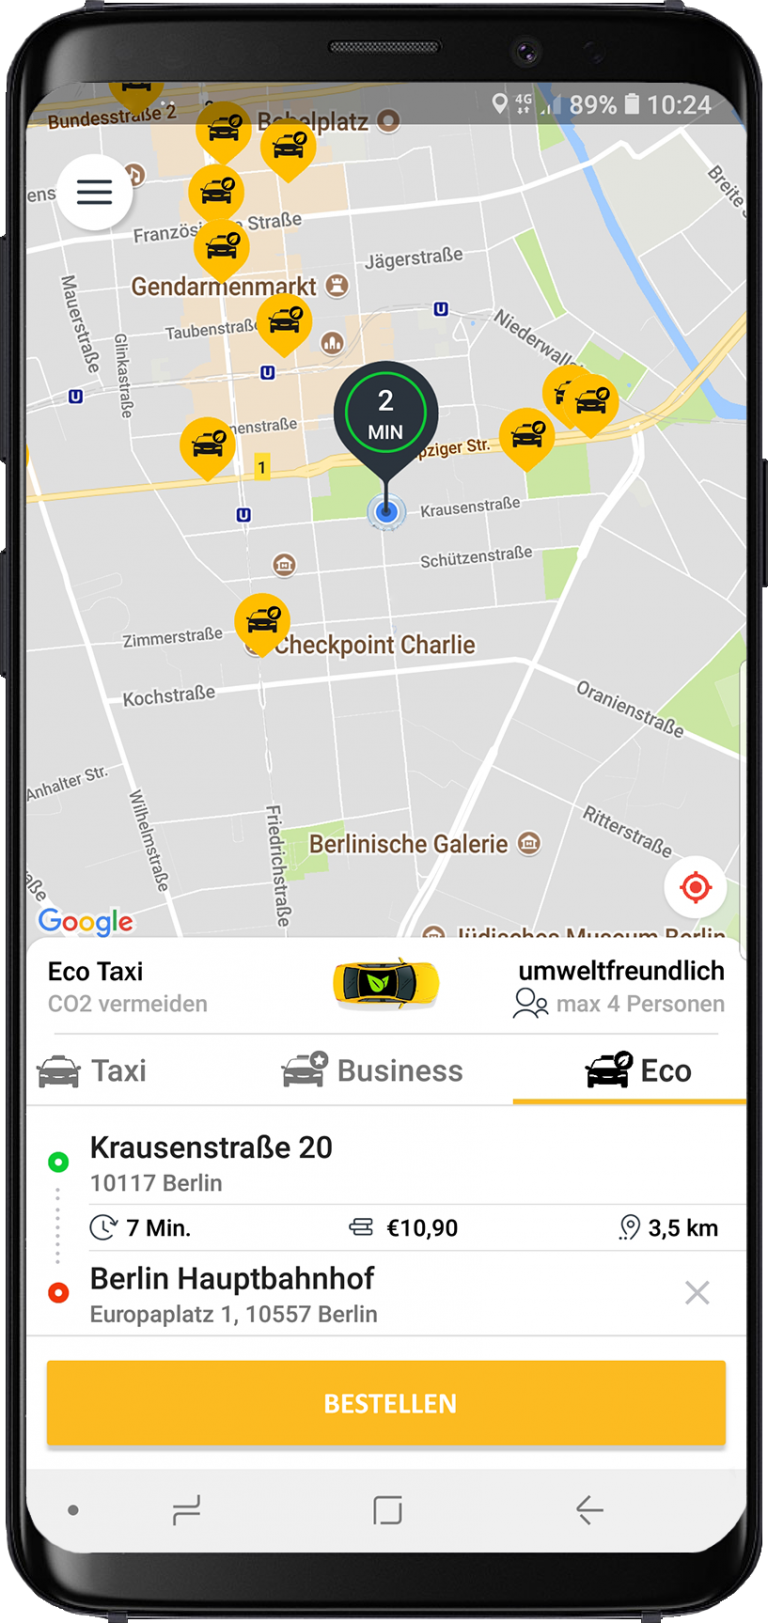 Обновить приложение такси. Приложение такси. Мобильное приложение такси. Интерфейс приложения такси. Приложение для вызова такси.